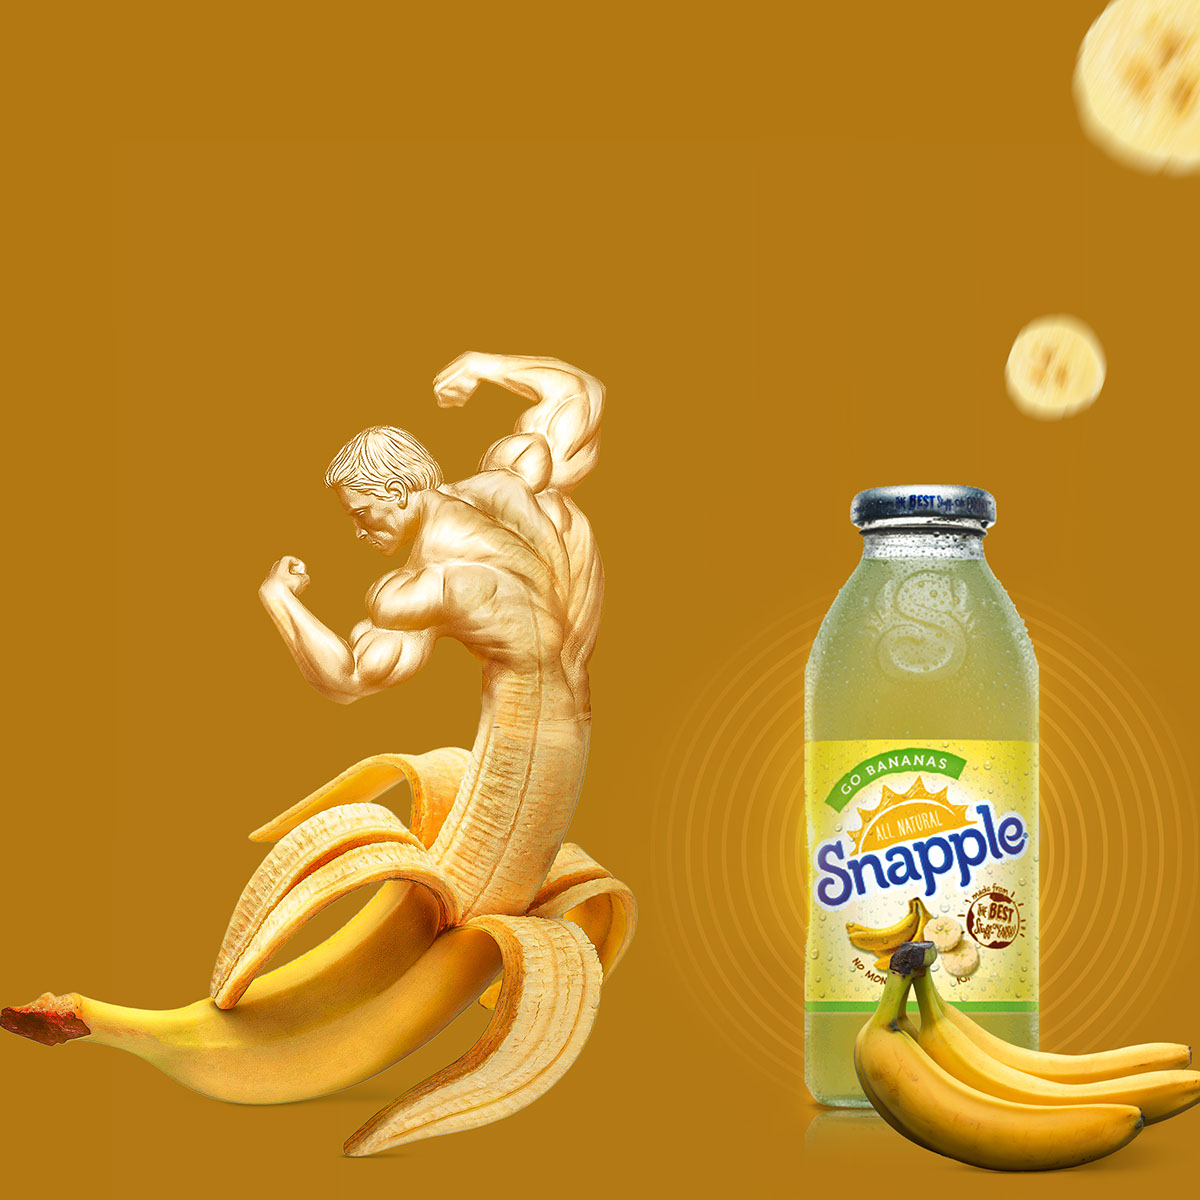 Banana Juice rendition image